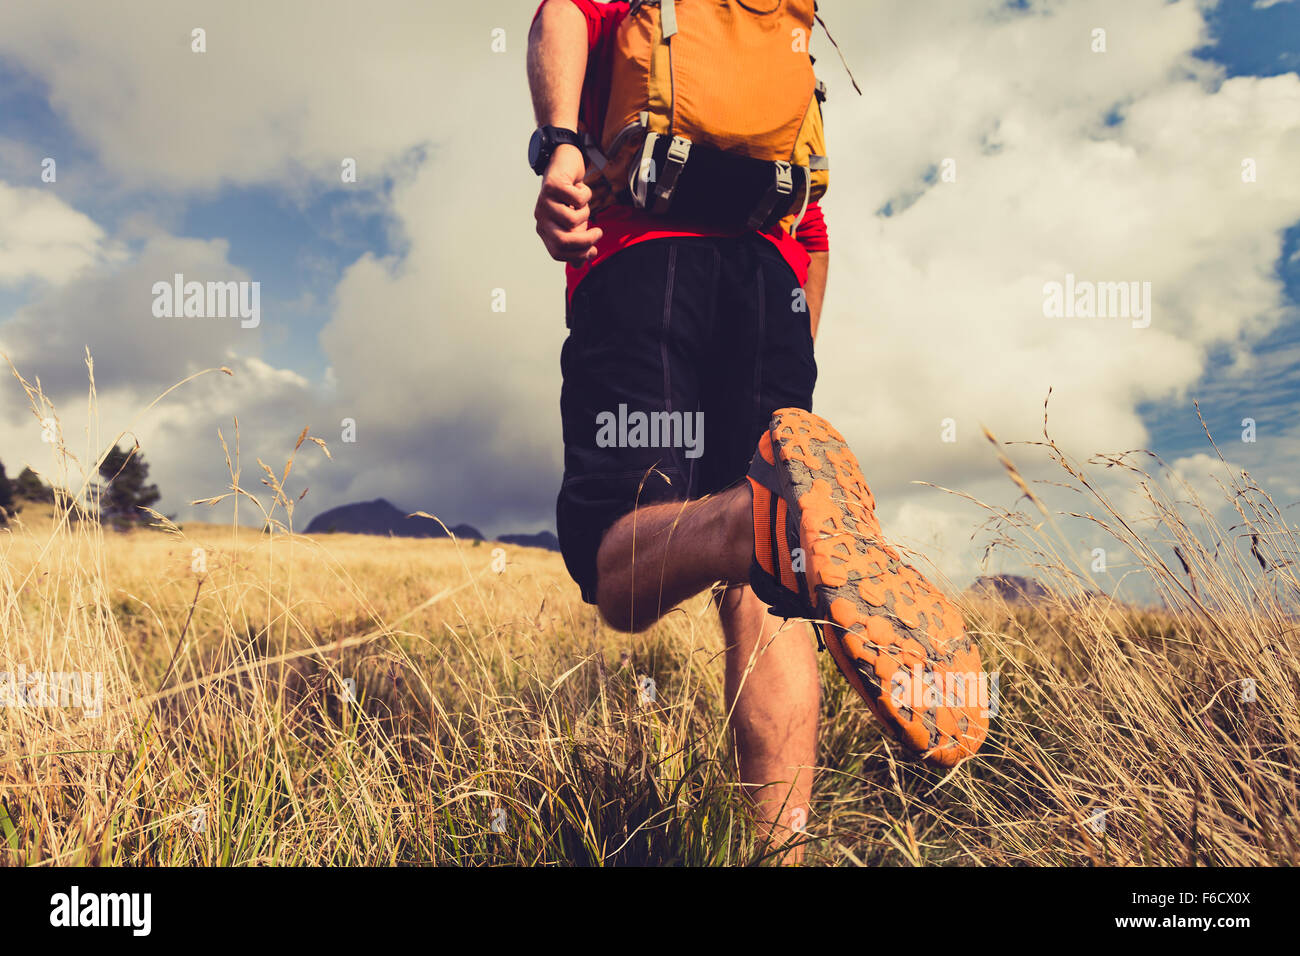 Homme randonnée, backpacker, grimpeur ou Trail Runner dans les montagnes à la recherche d'inspiration dans le magnifique paysage. Guérir et de remise en forme Banque D'Images